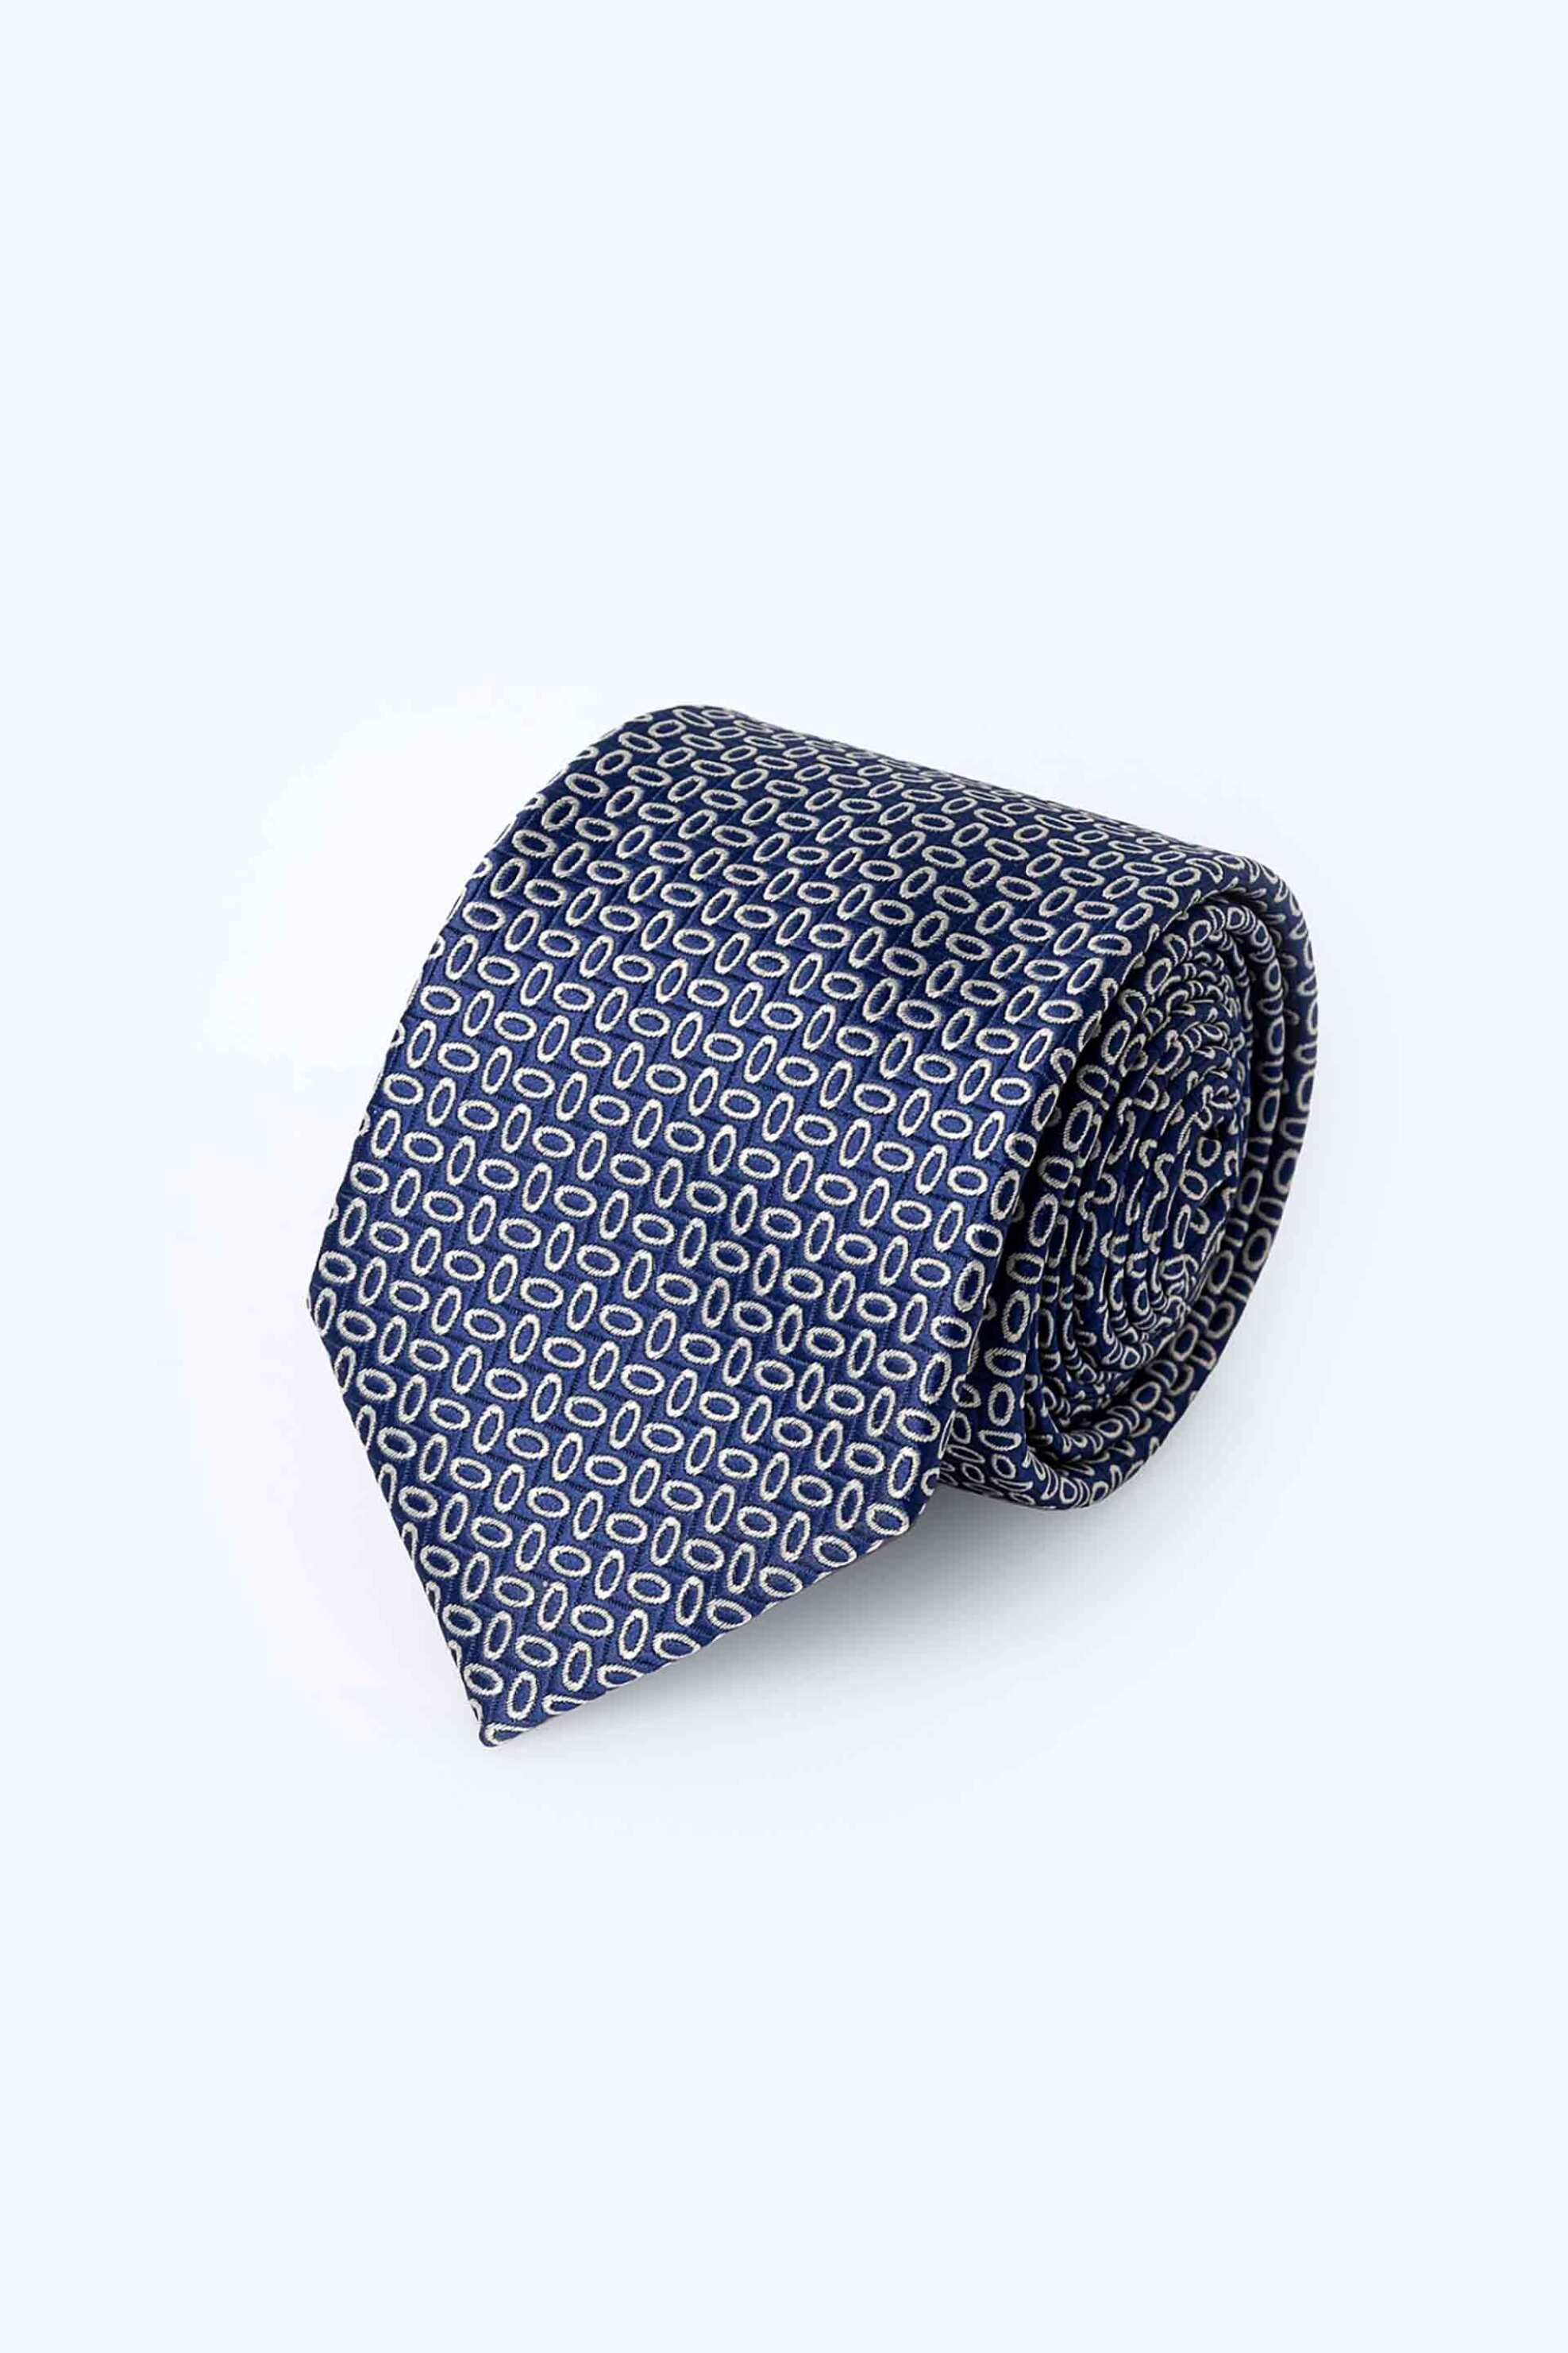 Ανδρική Μόδα > Ανδρικά Αξεσουάρ > Ανδρικές Γραβάτες & Παπιγιόν The Bostonians ανδρική γραβάτα με σχέδιο Dobby" - TIE1618 Μπλε Σκούρο